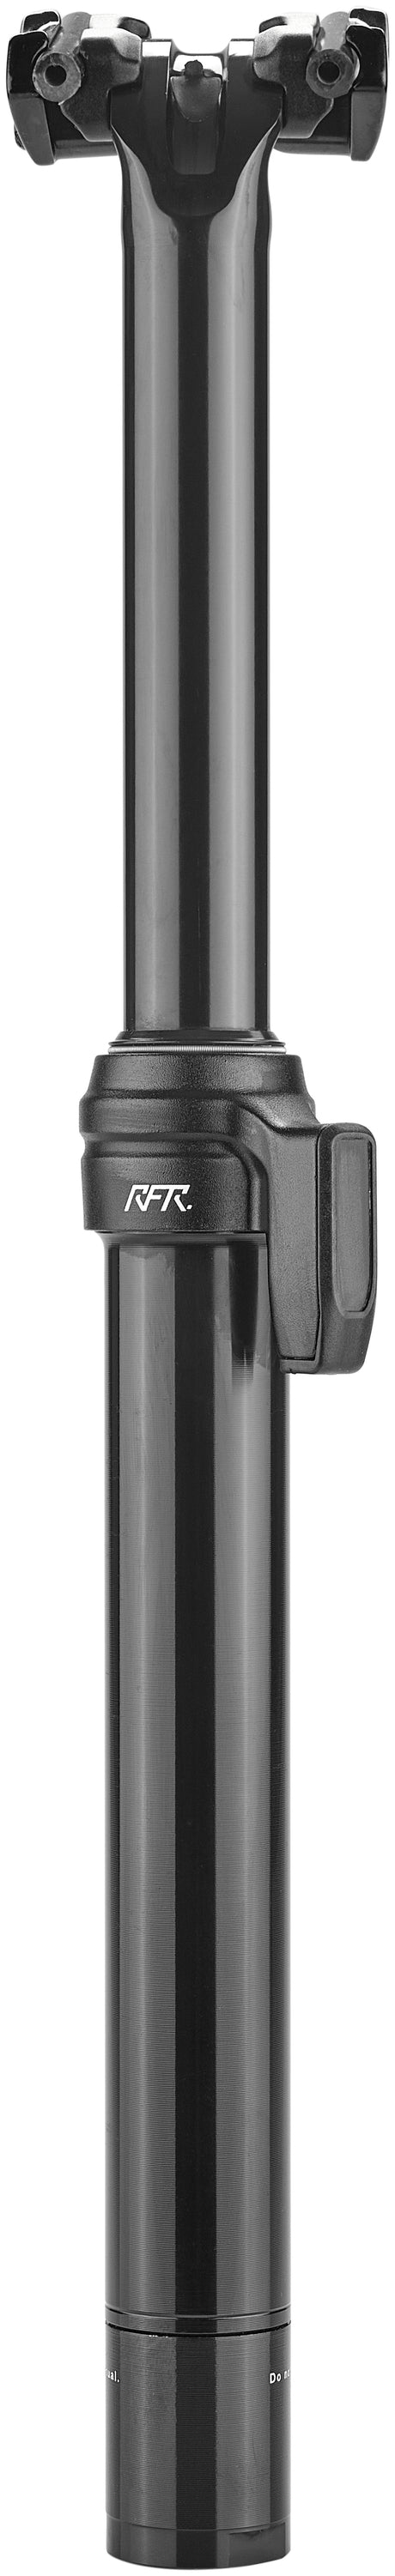 Cube RFR Pro Outside Sattelstütze 120mm Ø30,9mm schwarz